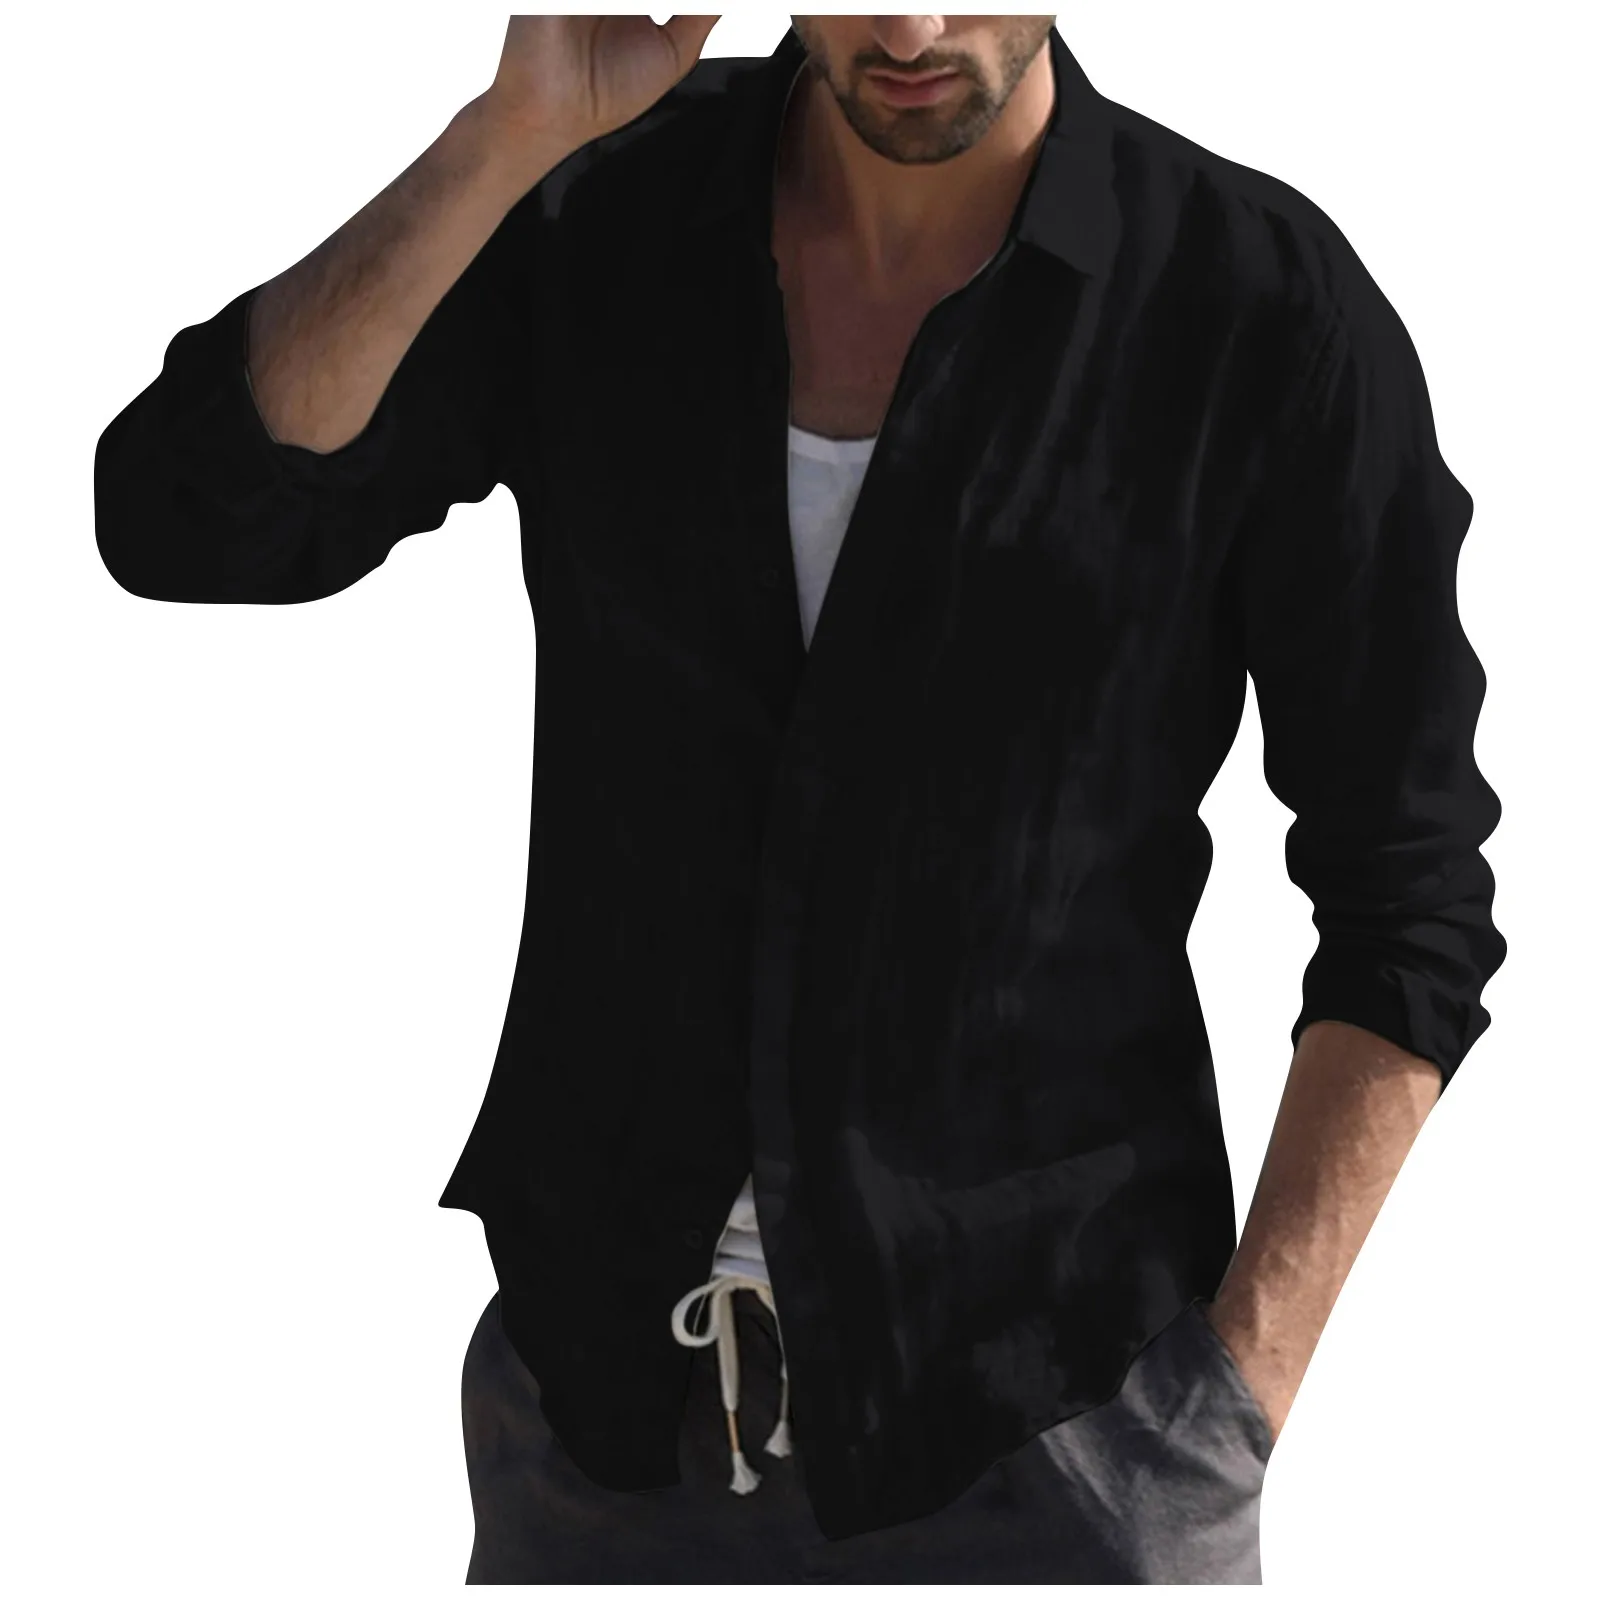 

Рубашка мужская с отложным воротником, Пляжная блузка на пуговицах, однотонная хлопково-льняная рубашка с длинным рукавом, свободного покроя, в стиле ретро, весна-осень